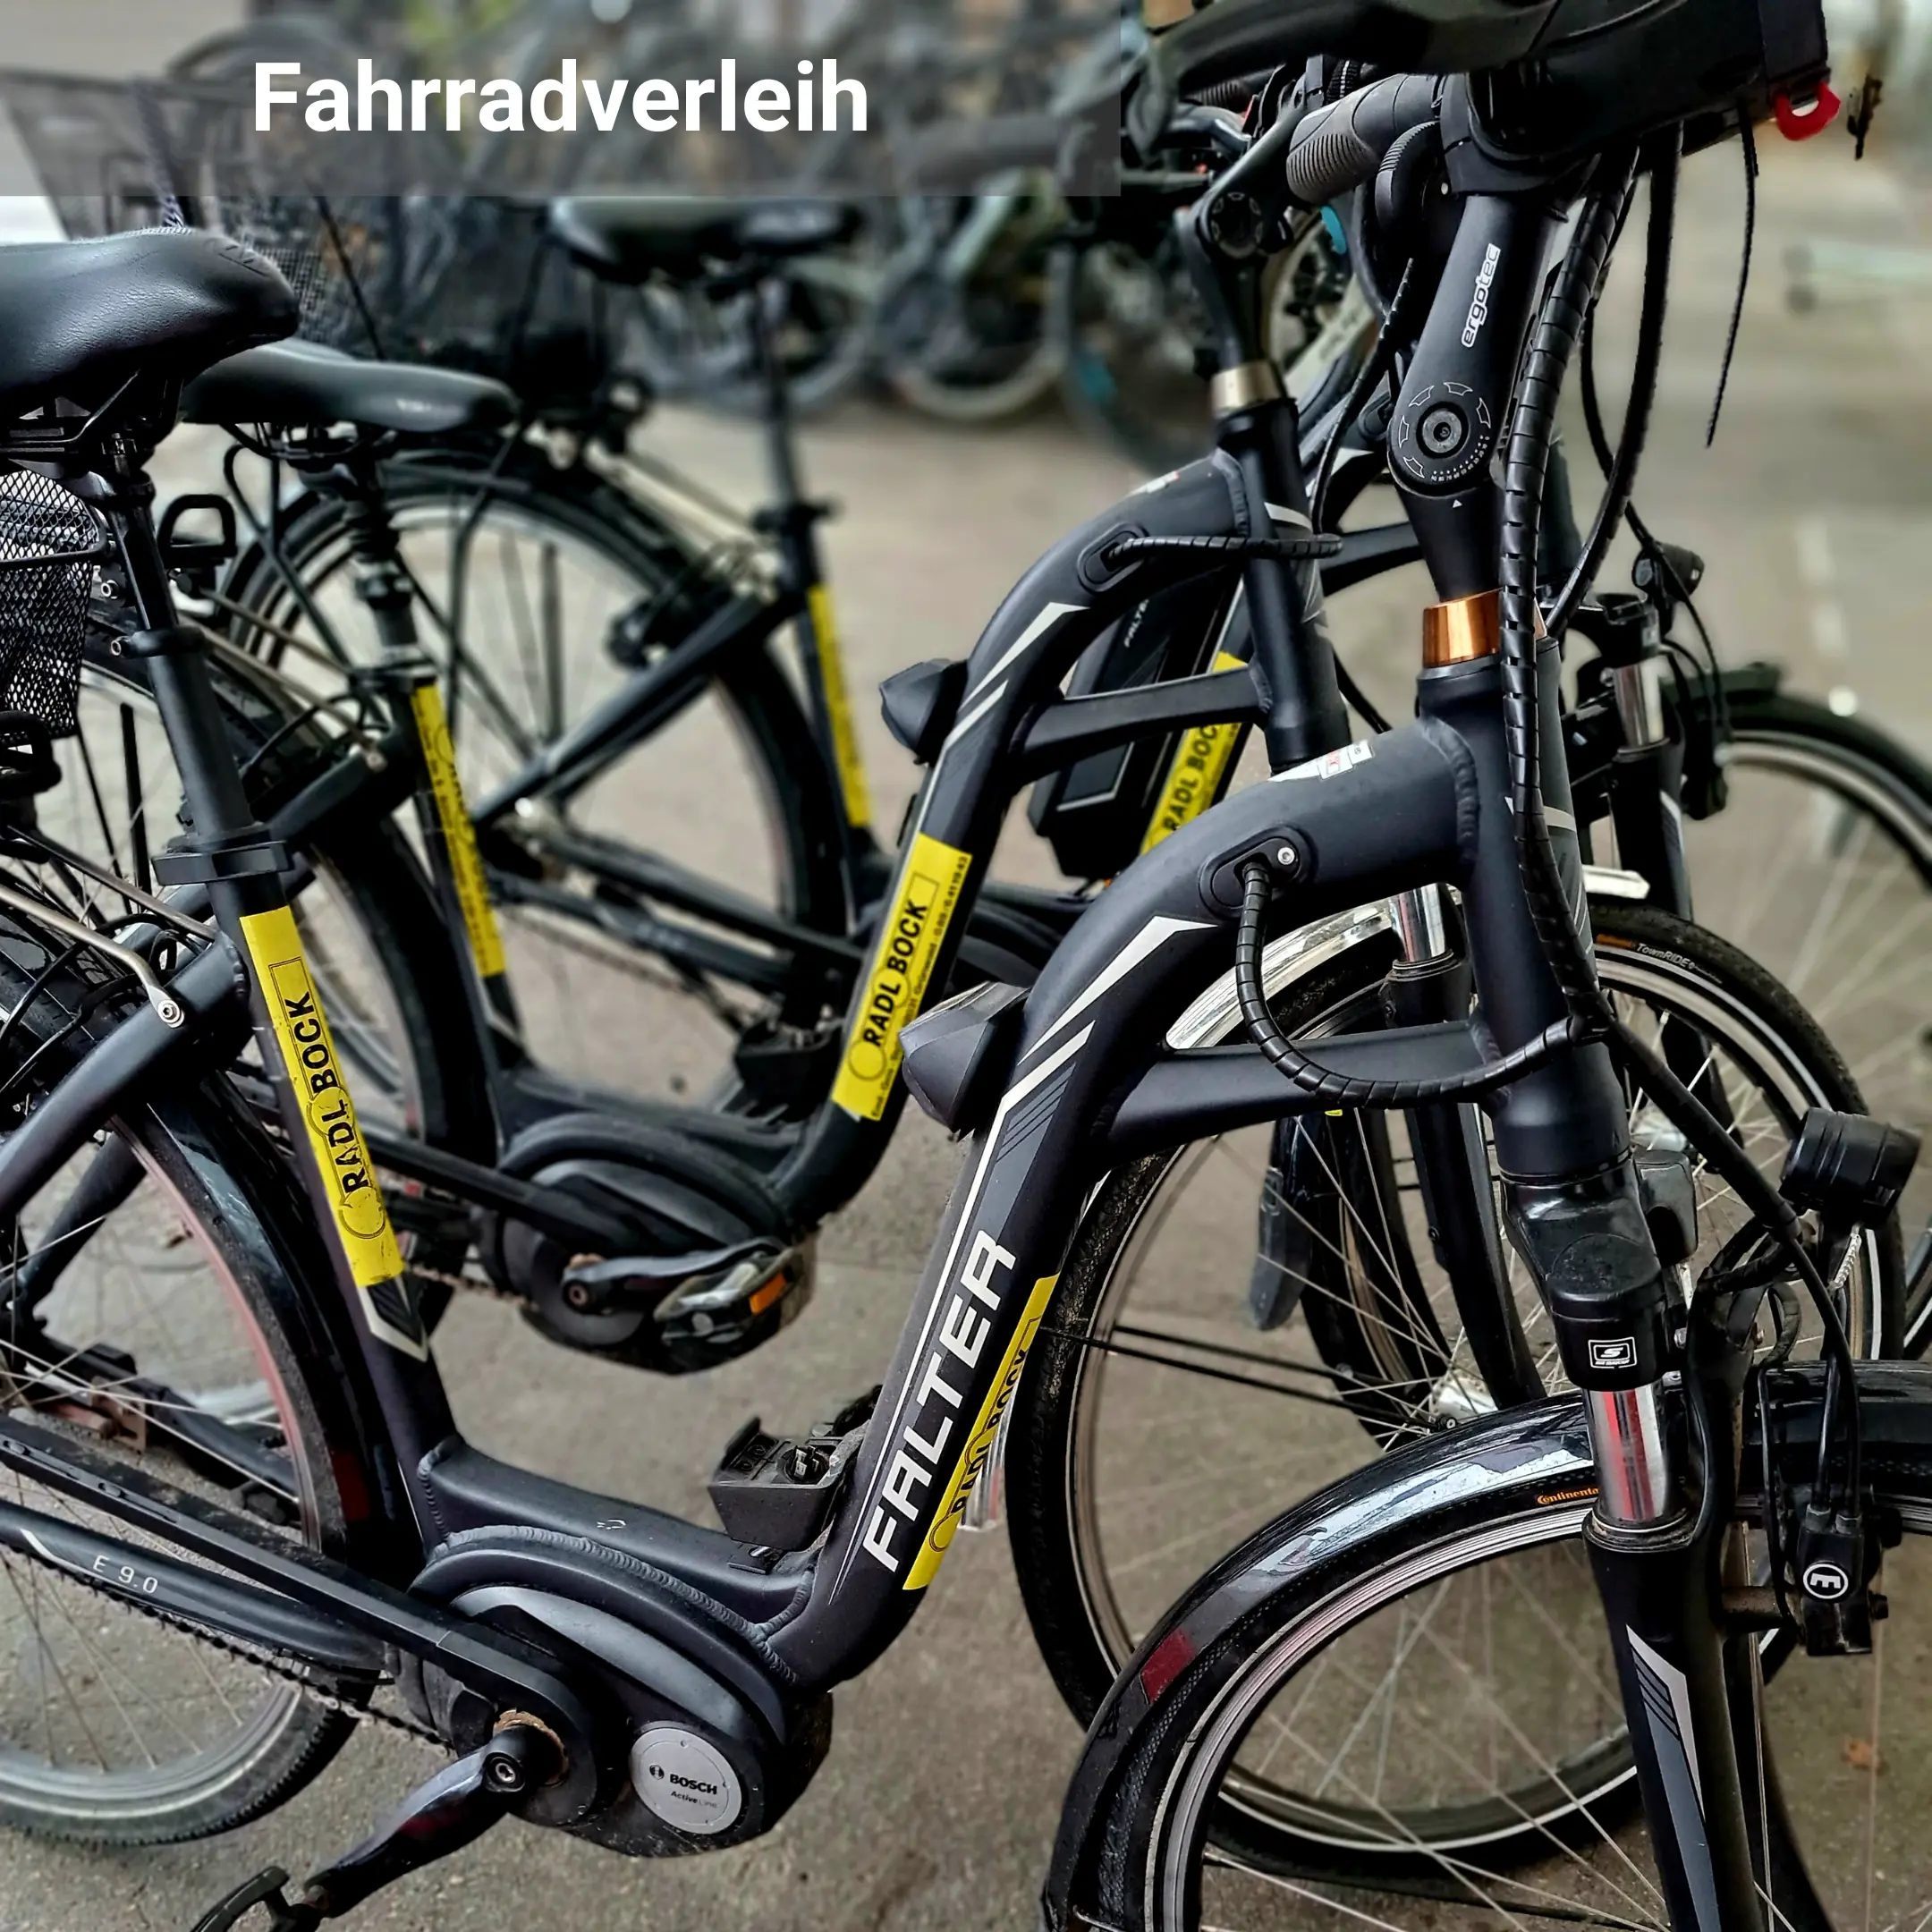 Ein Bild zur Darstellung von zu verleihenden Fahrrädern